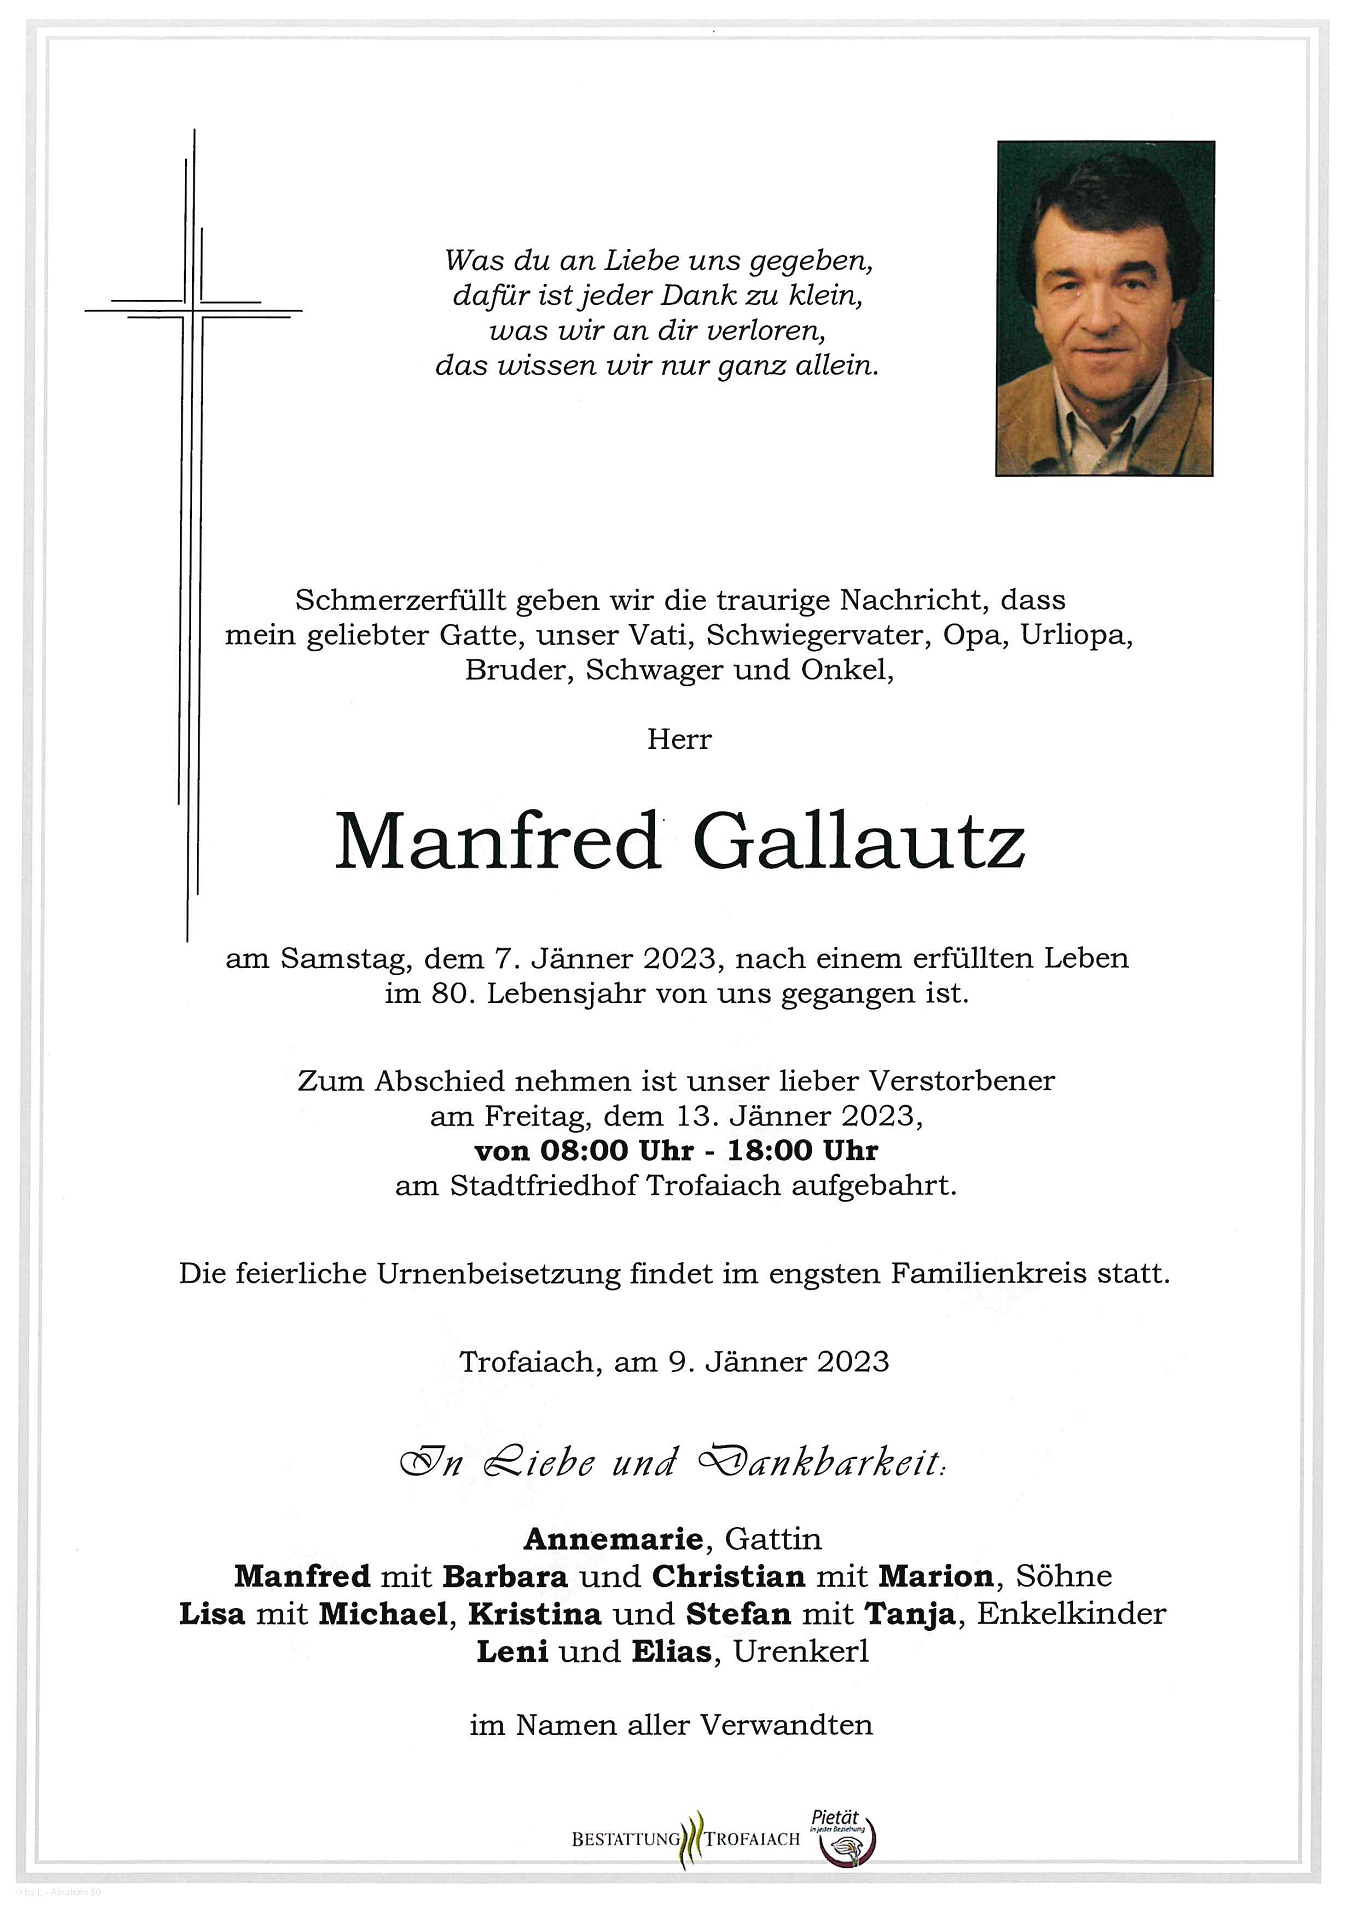 Gallautz Manfred